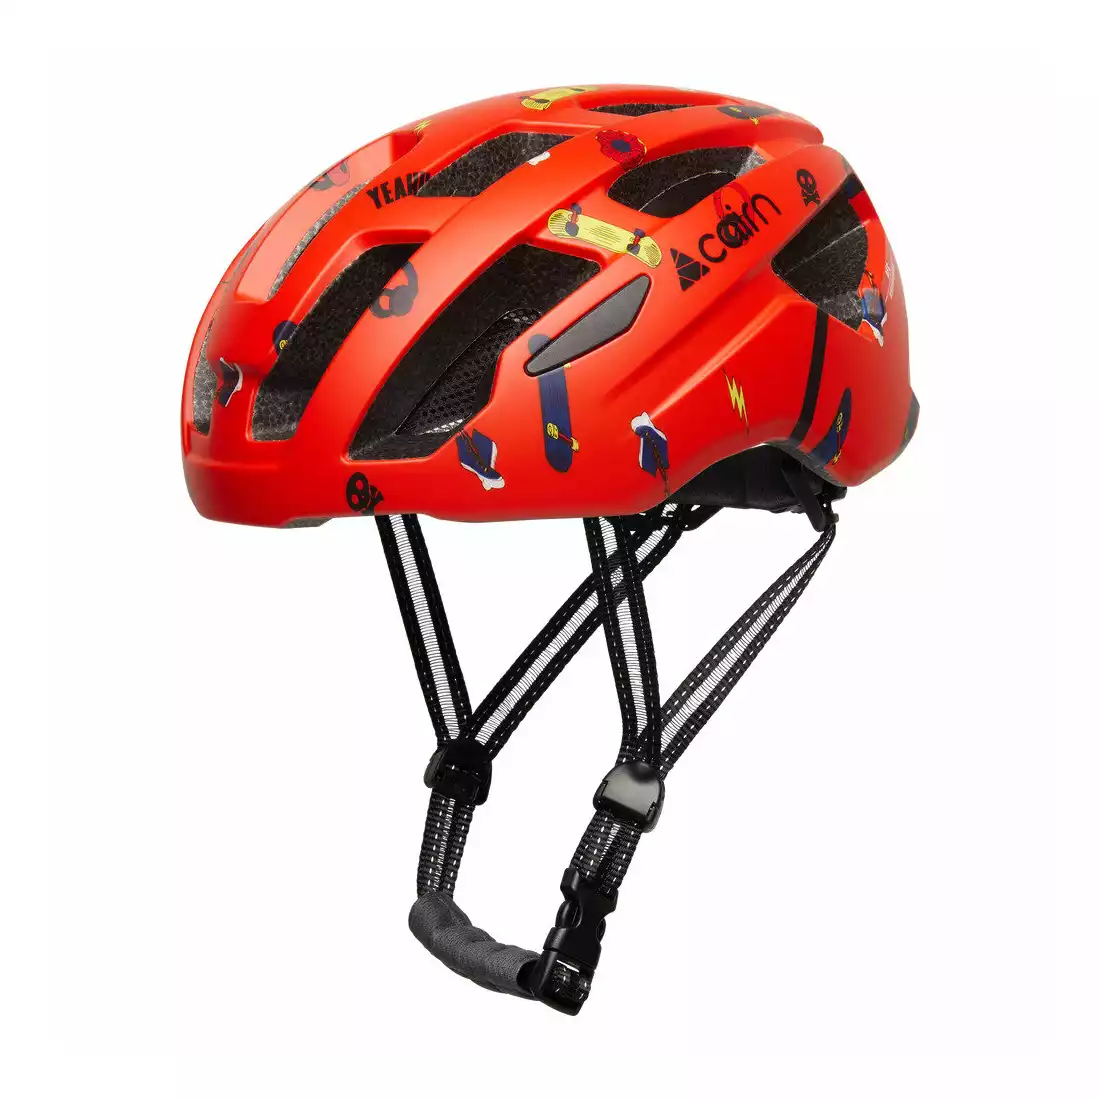 CAIRN PRISM II J Children's bicycle helmet, Red